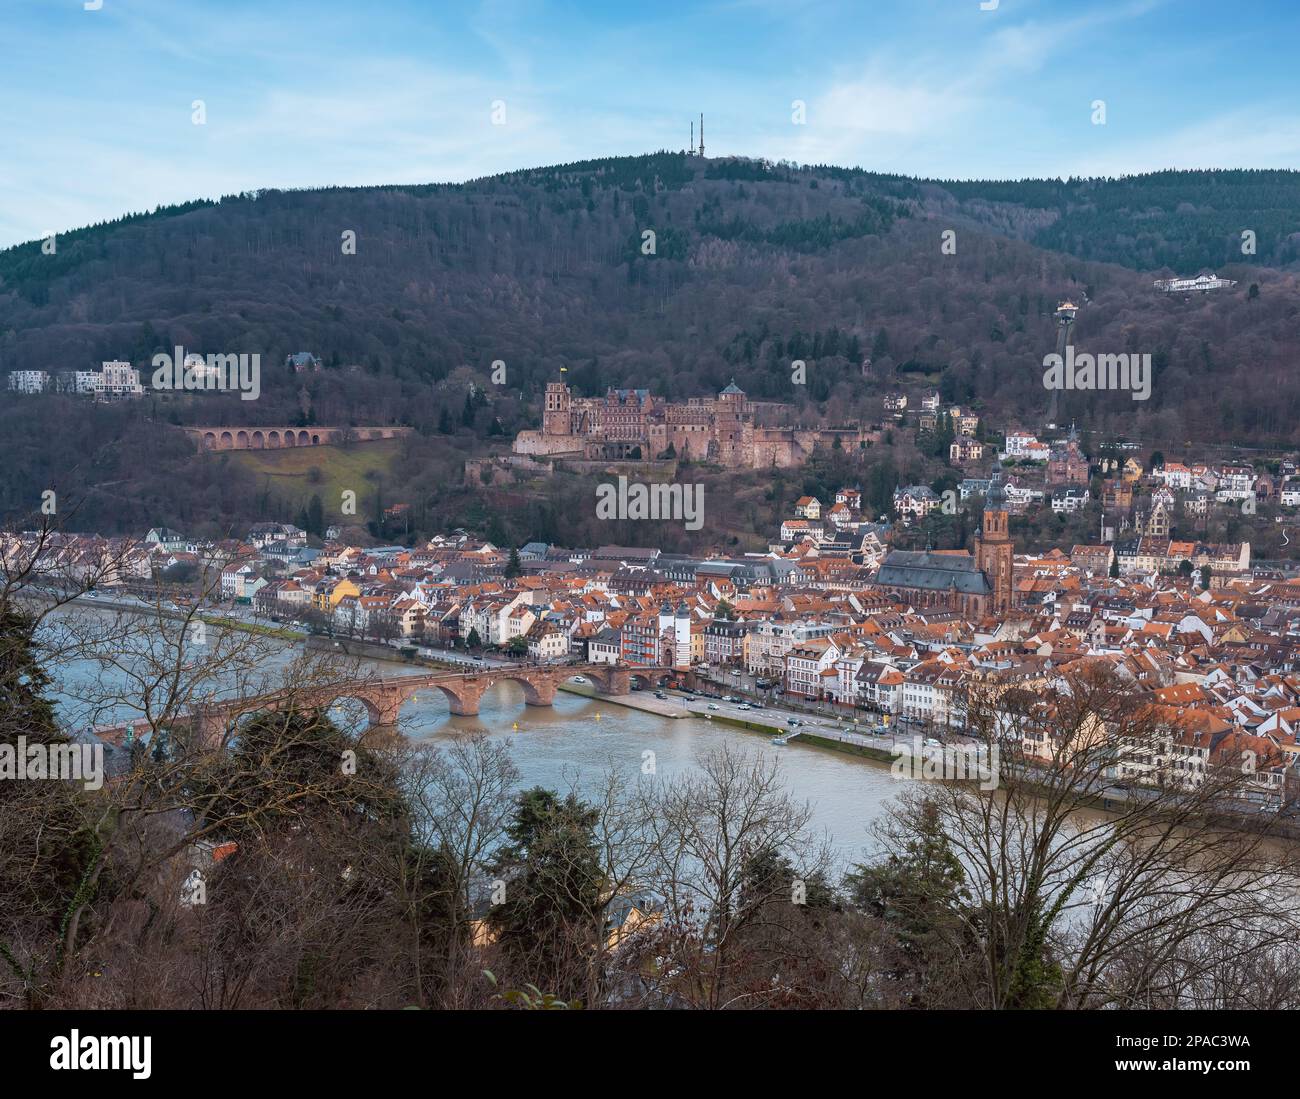 Blick auf die Altstadt mit Heidelberger Schloss, Alte Brücke und Heiliggeistkirche - Heidelberg, Deutschland Stockfoto